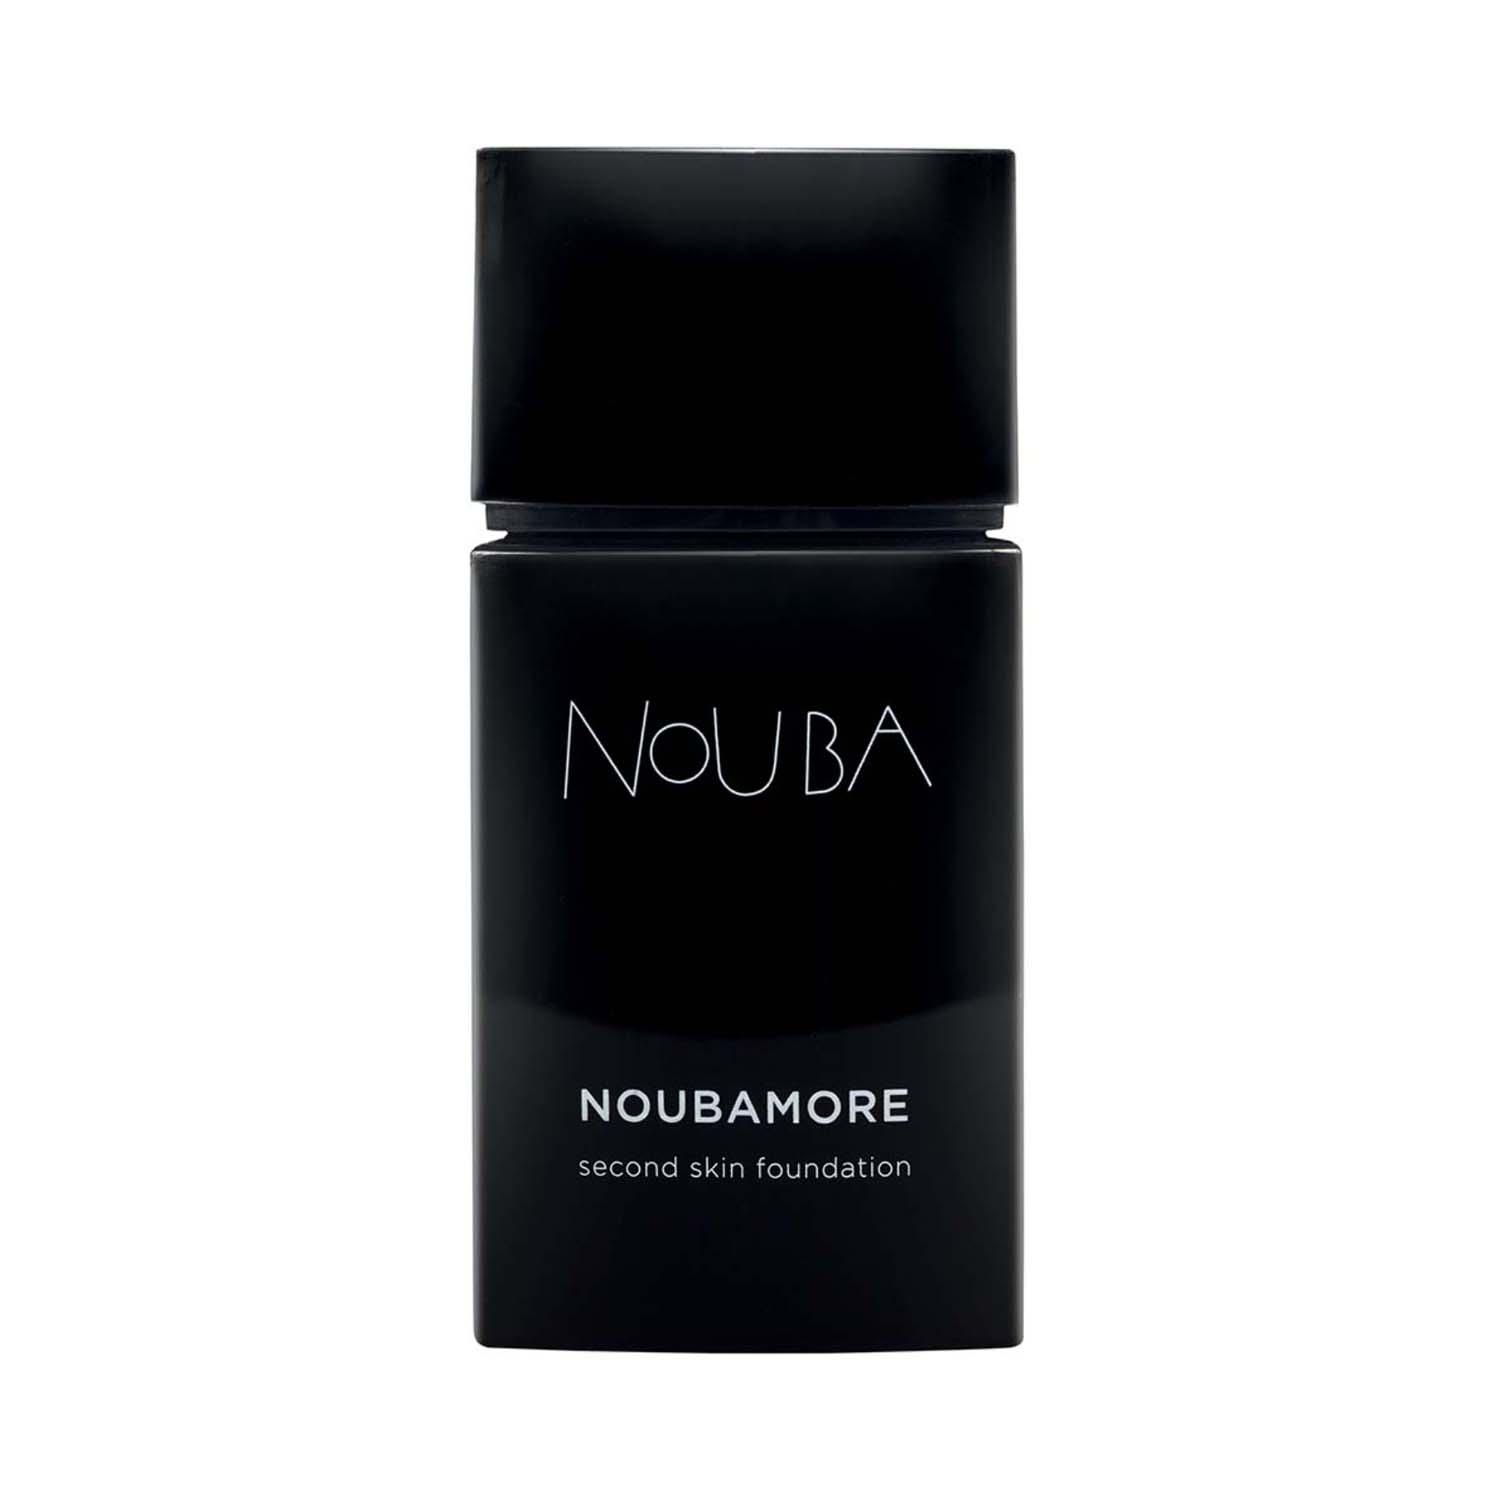 Nouba | Nouba Noubamore Second Skin Foundation - No 82 Brown (30 ml)